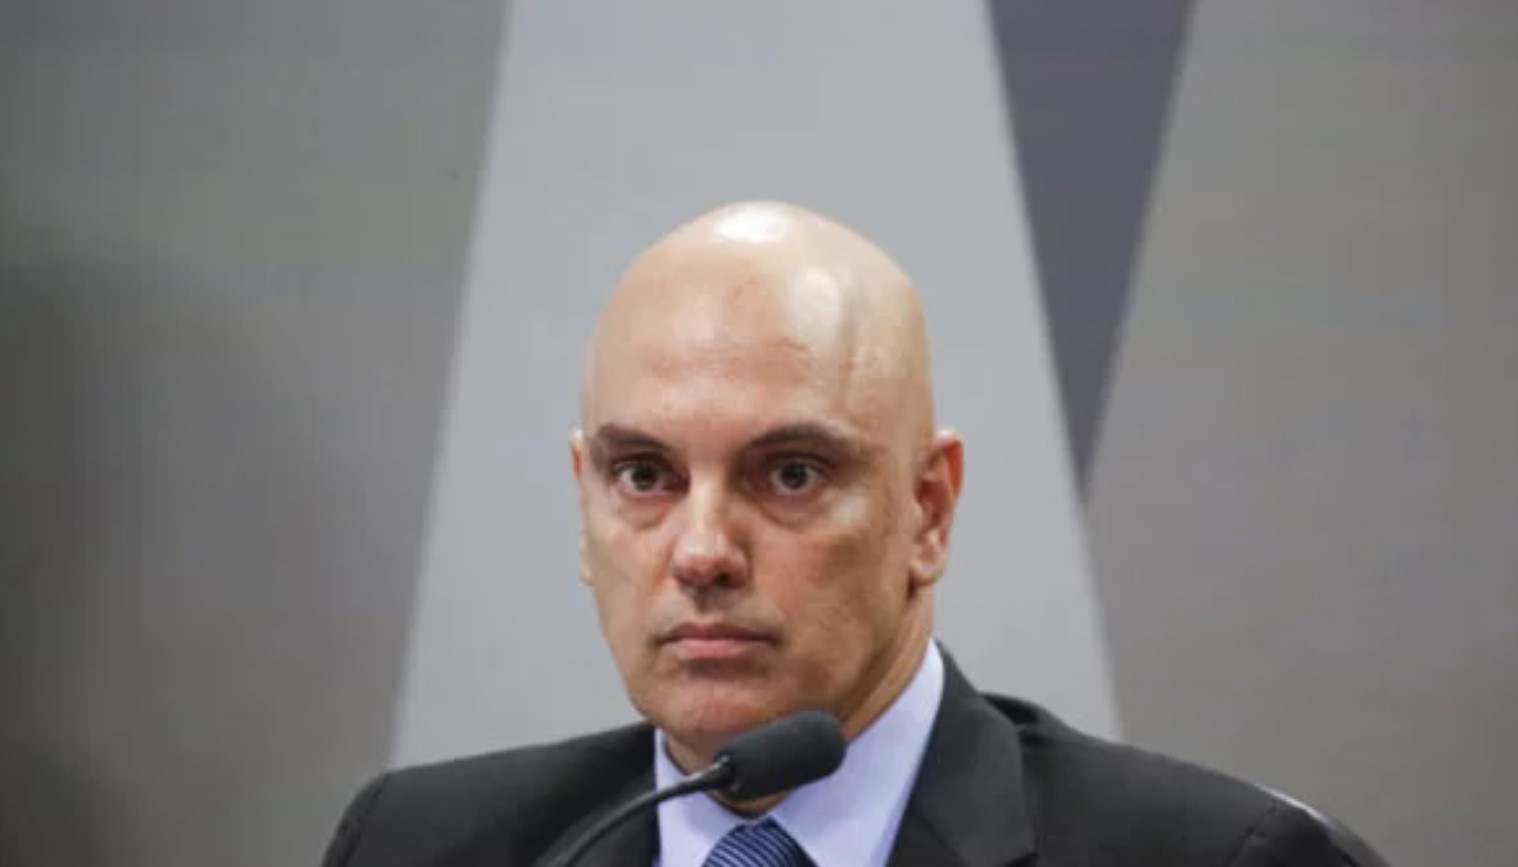 O ministro Alexandre de Moraes é interrogado nas investigações relacionadas ao incidente ocorrido no aeroporto de Fiumicino. FOTO: internet.